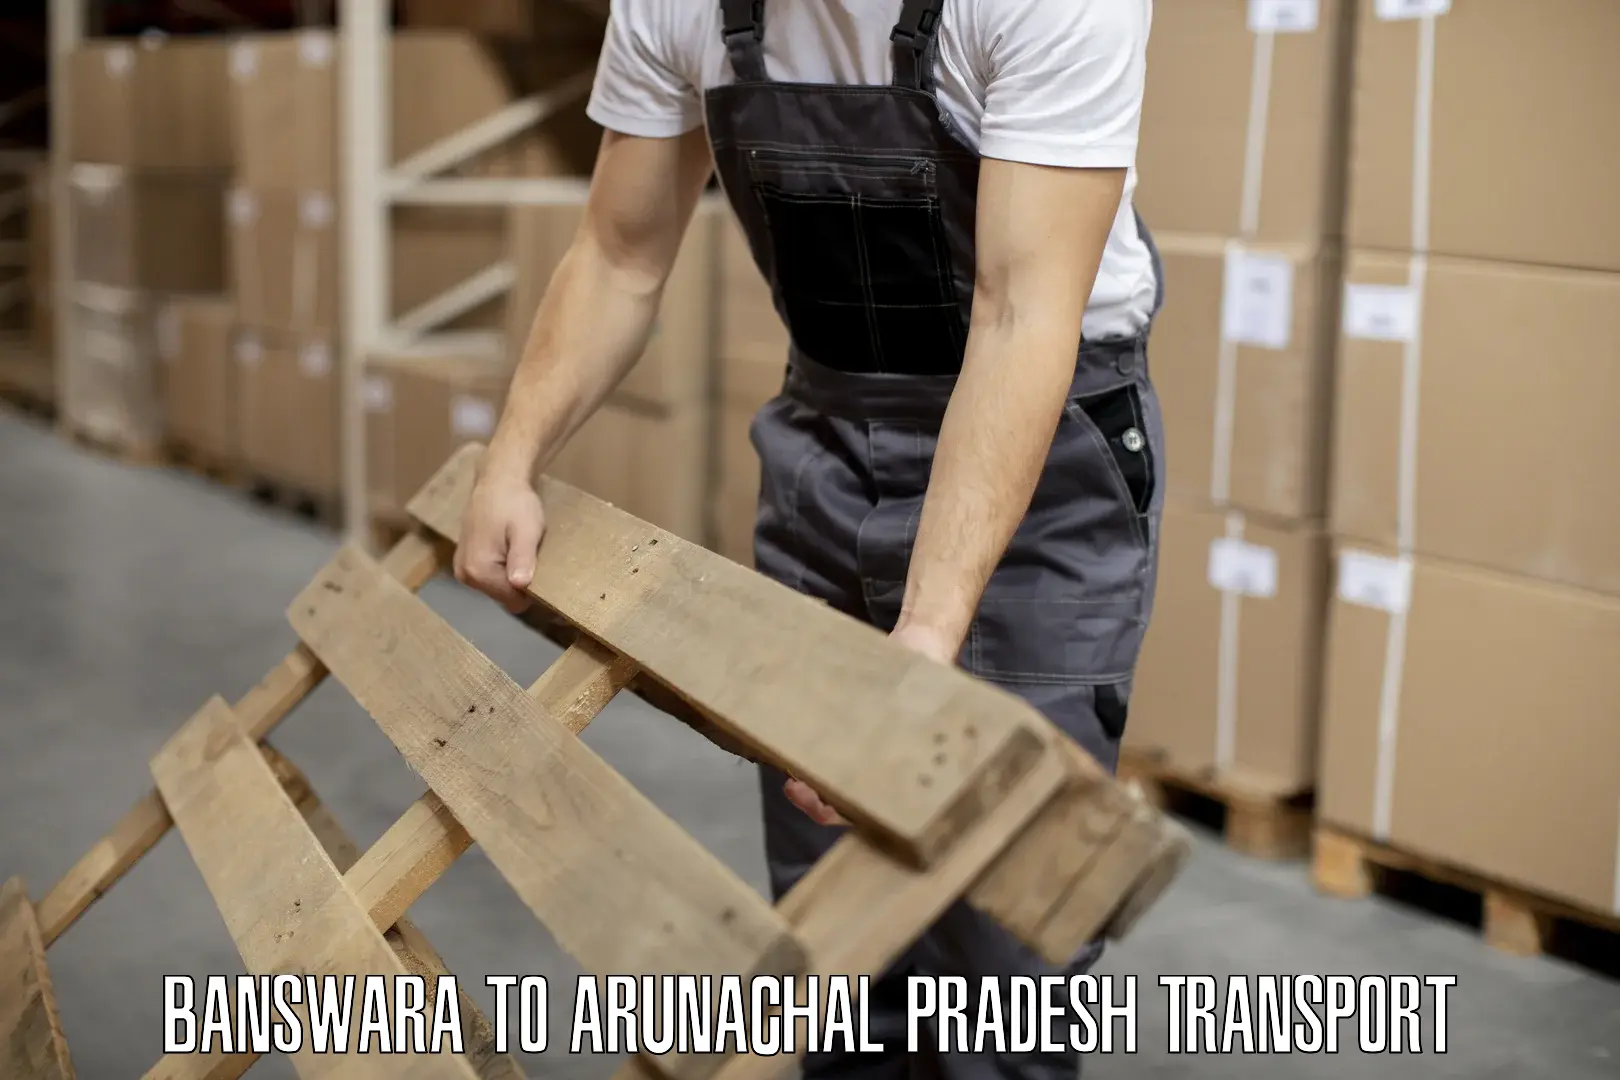 Furniture transport service Banswara to Arunachal Pradesh